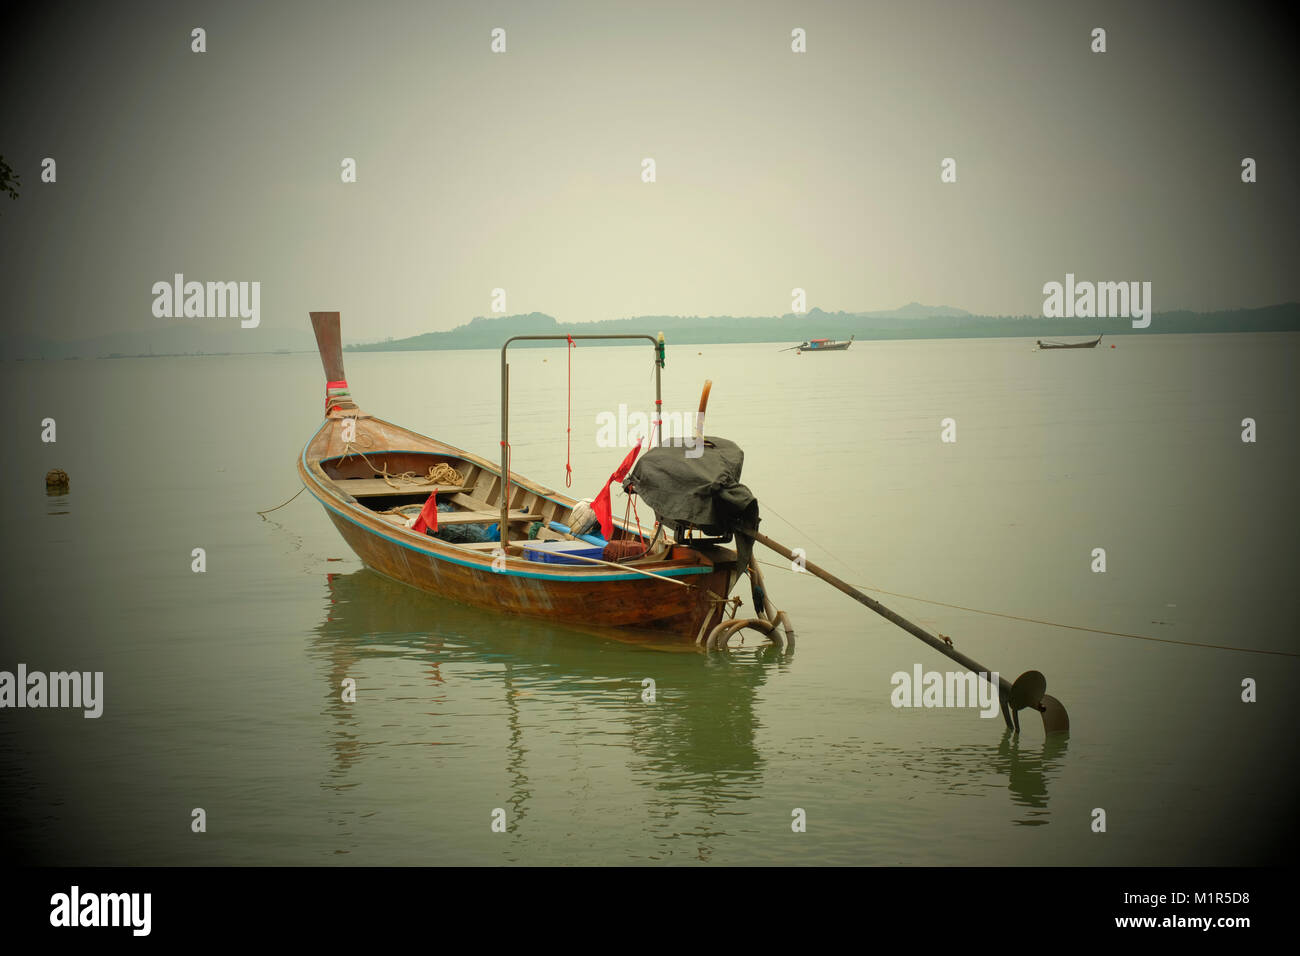 Un bateau de pêche à longue queue à Koh Yao Noi, une île thaïlandaise dans la mer d'Andaman. 20-Jan-2018 Banque D'Images